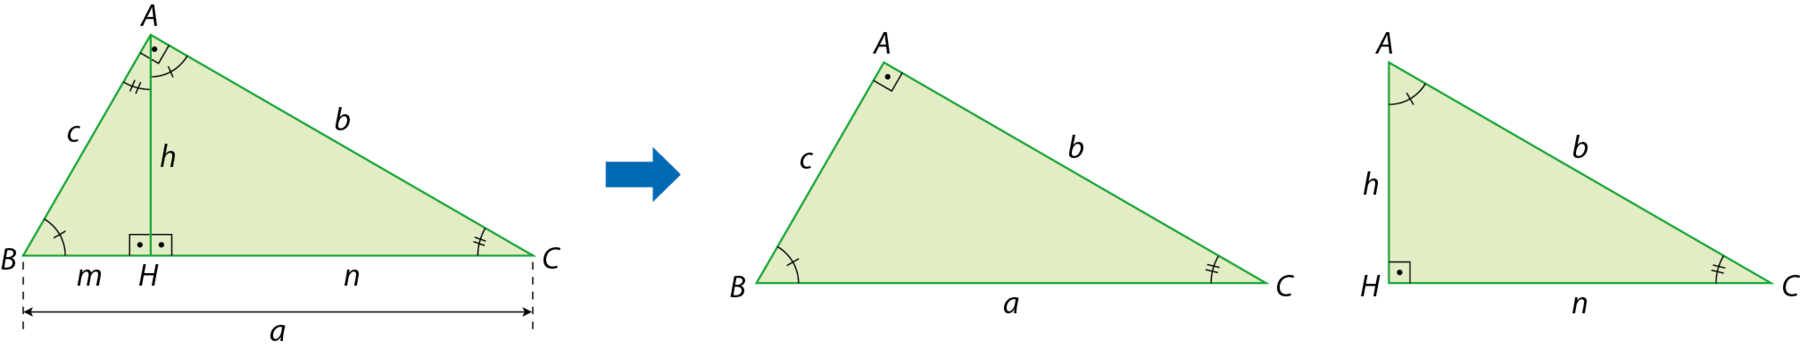 Esquema. Triângulo retângulo verde com vértices A, B e C. No vértice A o ângulo é reto, no vértice B o ângulo tem indicação de 1 tracinho e no vértice C o ângulo tem indicação de 2 tracinhos. O lado AB mede c, o lado AC mede b e o lado BC mede a.
Ponto H pertencente ao lado BC de forma que o segmento AH, de medida h, é perpendicular ao lado BC e divide o ângulo reto em duas partes. Com isso, formaram-se dois novos triângulos: Triângulo HBA e triângulo HAC. No triângulo HBA, no vértice H o ângulo é reto, no vértice B o ângulo tem indicação de 1 tracinho e no vértice A o ângulo tem indicação de 2 tracinhos. O lado AB mede c, o lado AH mede h e o lado BH mede m. No triângulo HAC, no vértice H o ângulo é reto, no vértice A o ângulo tem indicação de 1 tracinho e no vértice C o ângulo tem indicação de 2 tracinhos. O lado AC mede b, o lado AH mede h e o lado CH mede n. Seta azul para a direita indicando os triângulos ABC e HAC que devem ser considerados.